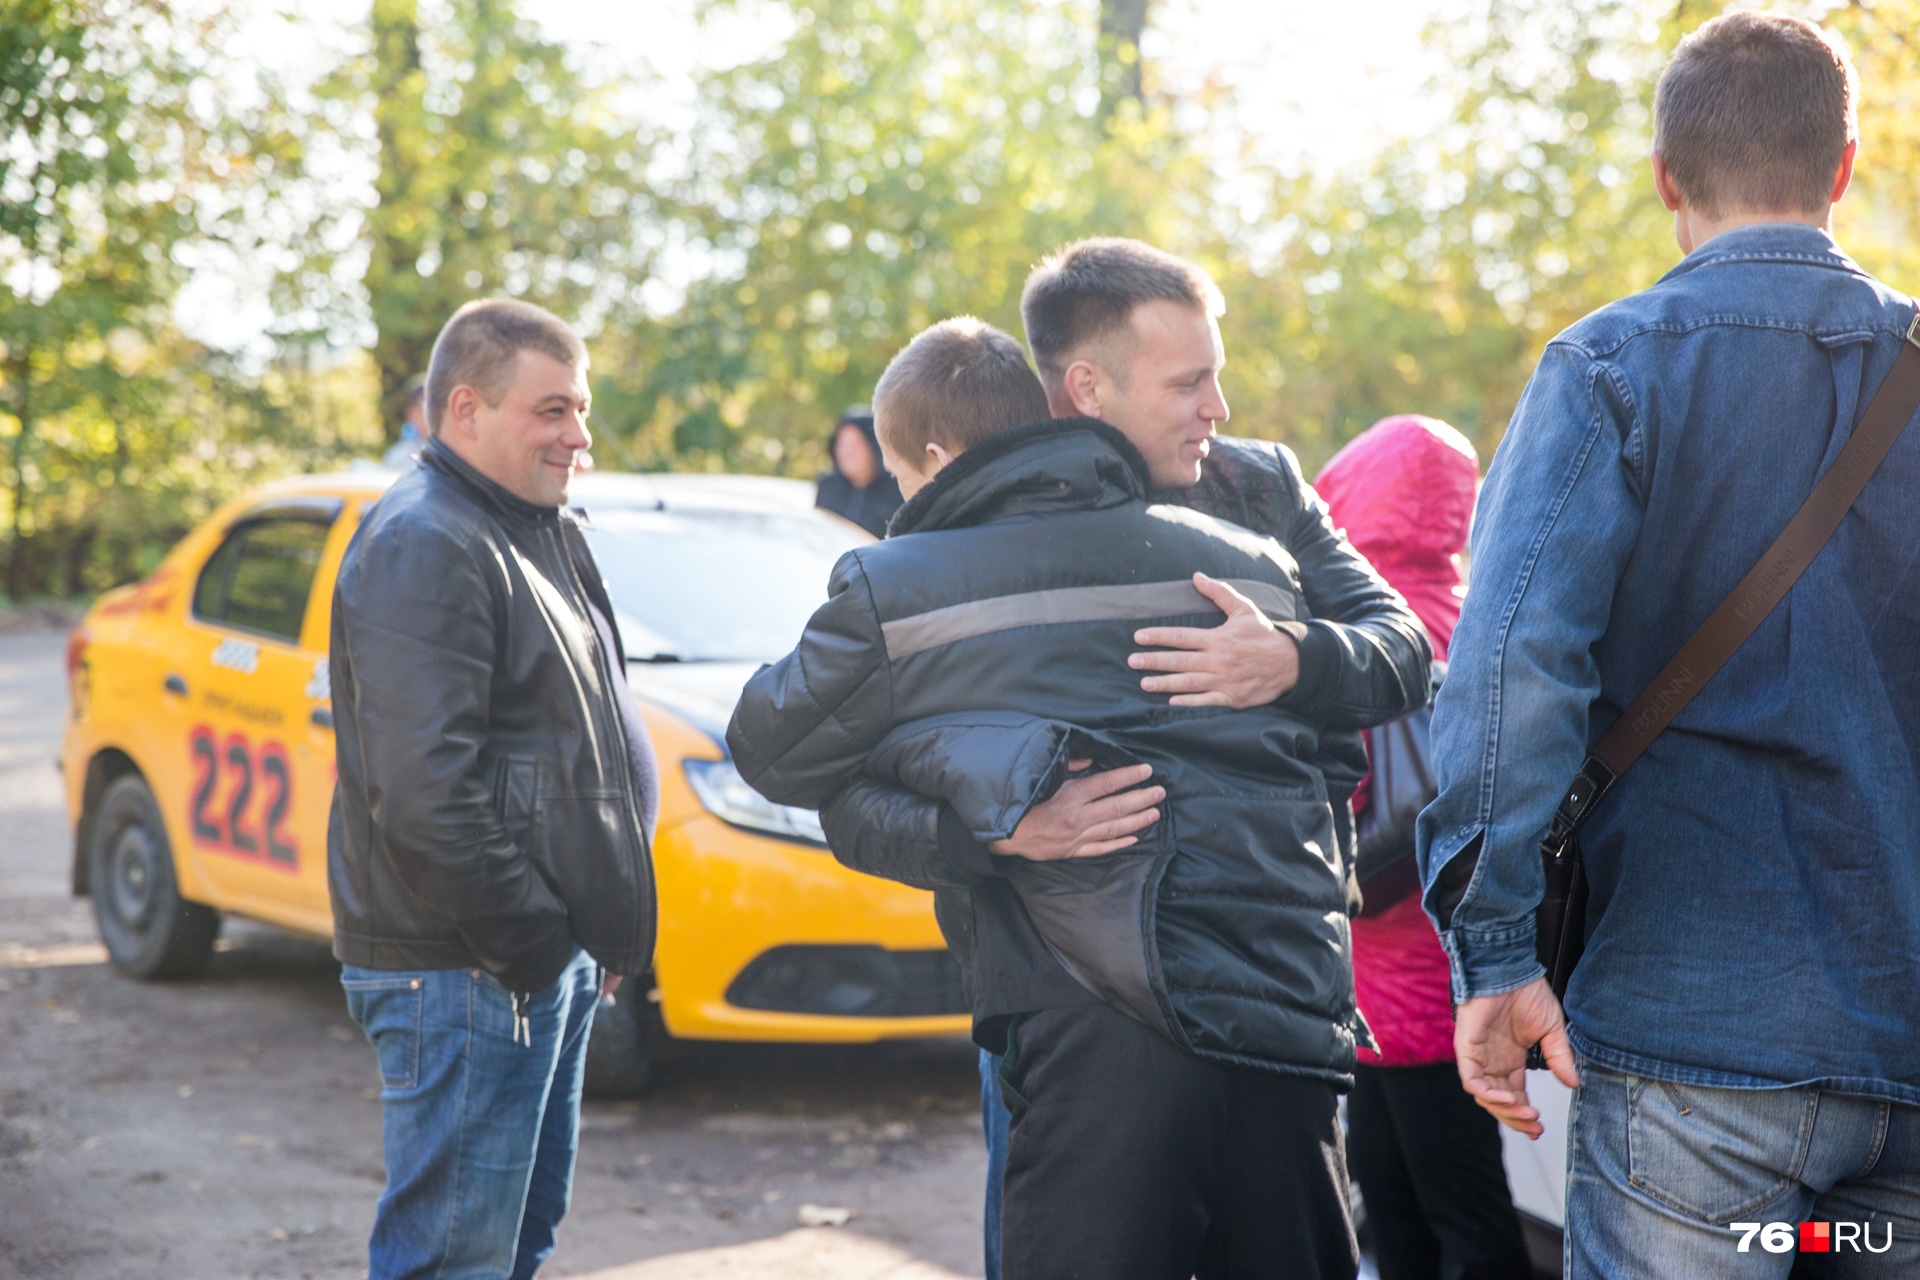 Друзья и родственники Макарова ждали, пока он наговорится с журналистами, и потом бросились к нему в объятия